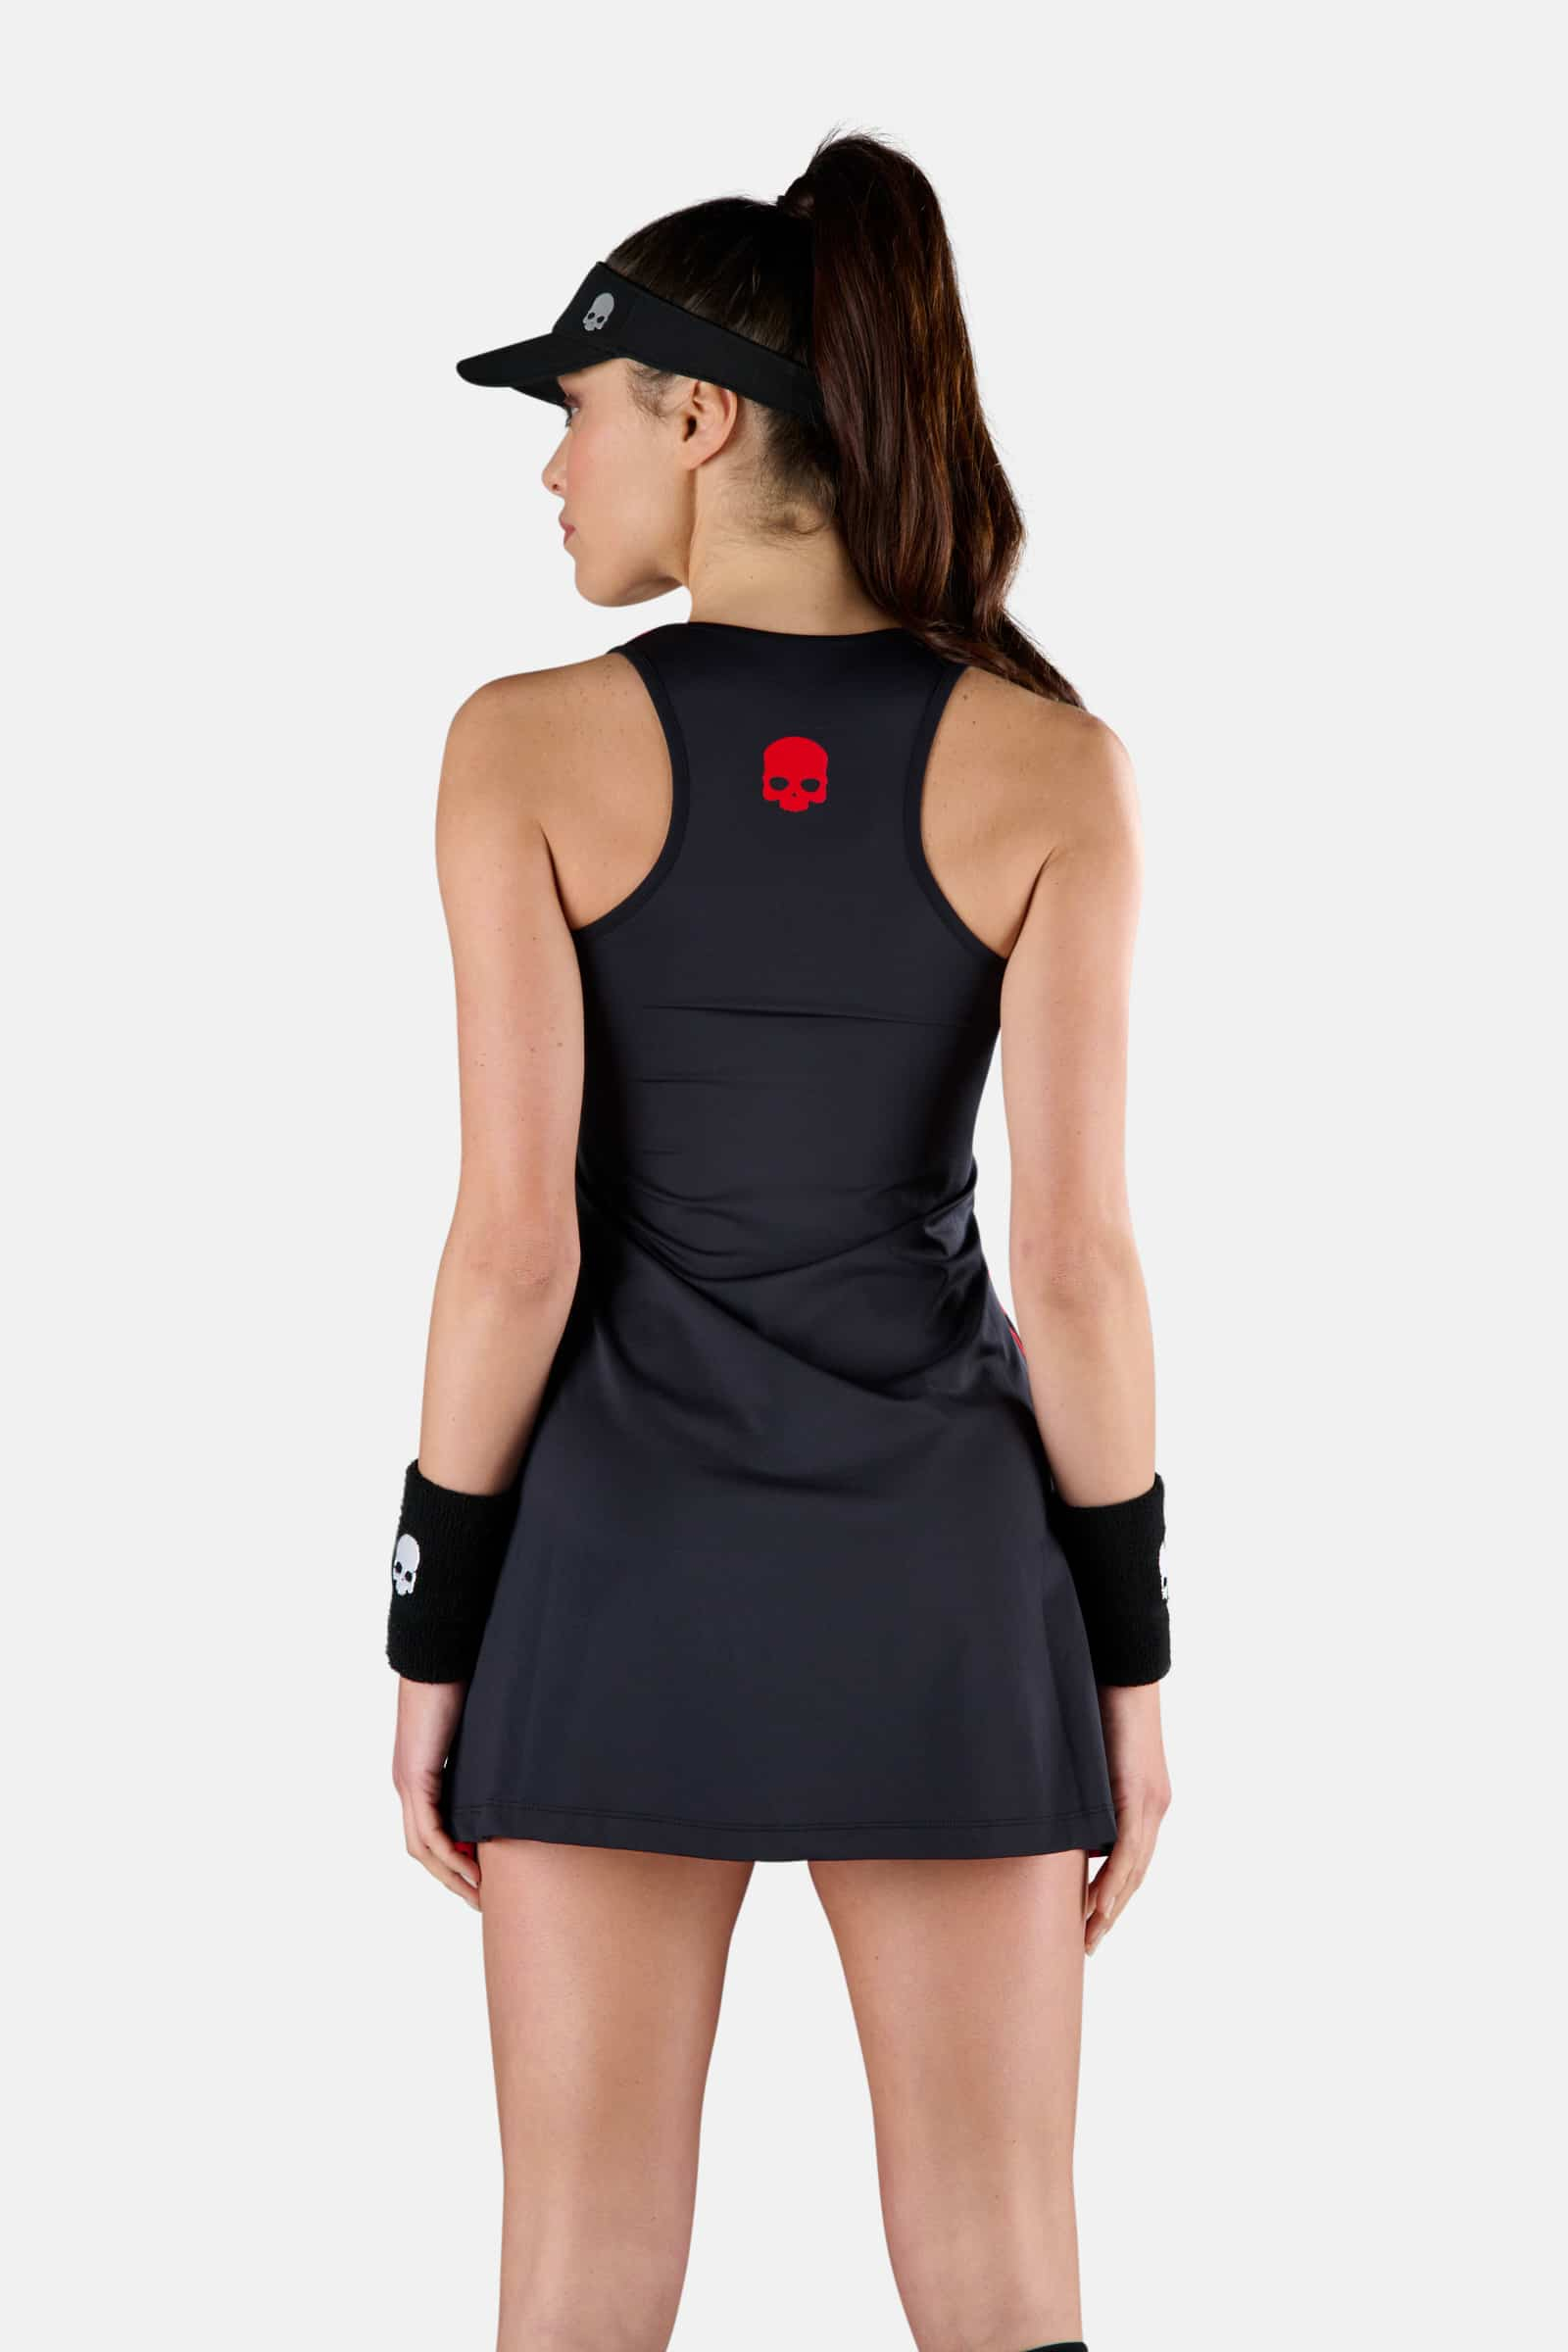 PANTHER TECH DRESS - BLACK,RED - Hydrogen - Luxury Sportwear